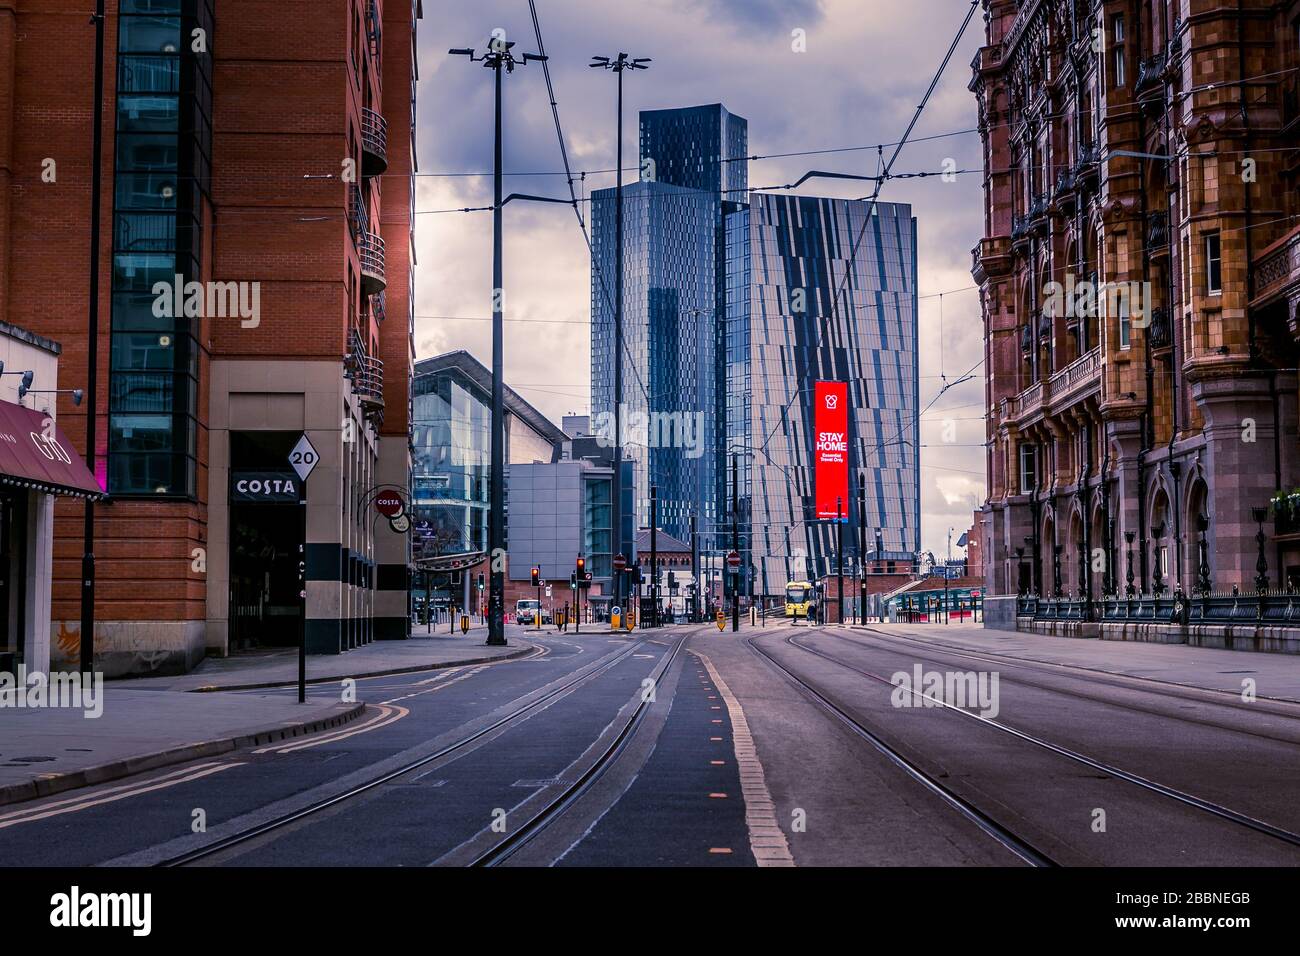 Manchester, Royaume-Uni. Les rues vides, les entreprises fermées pendant l'épidémie de coronavirus, avril 2020. Banque D'Images